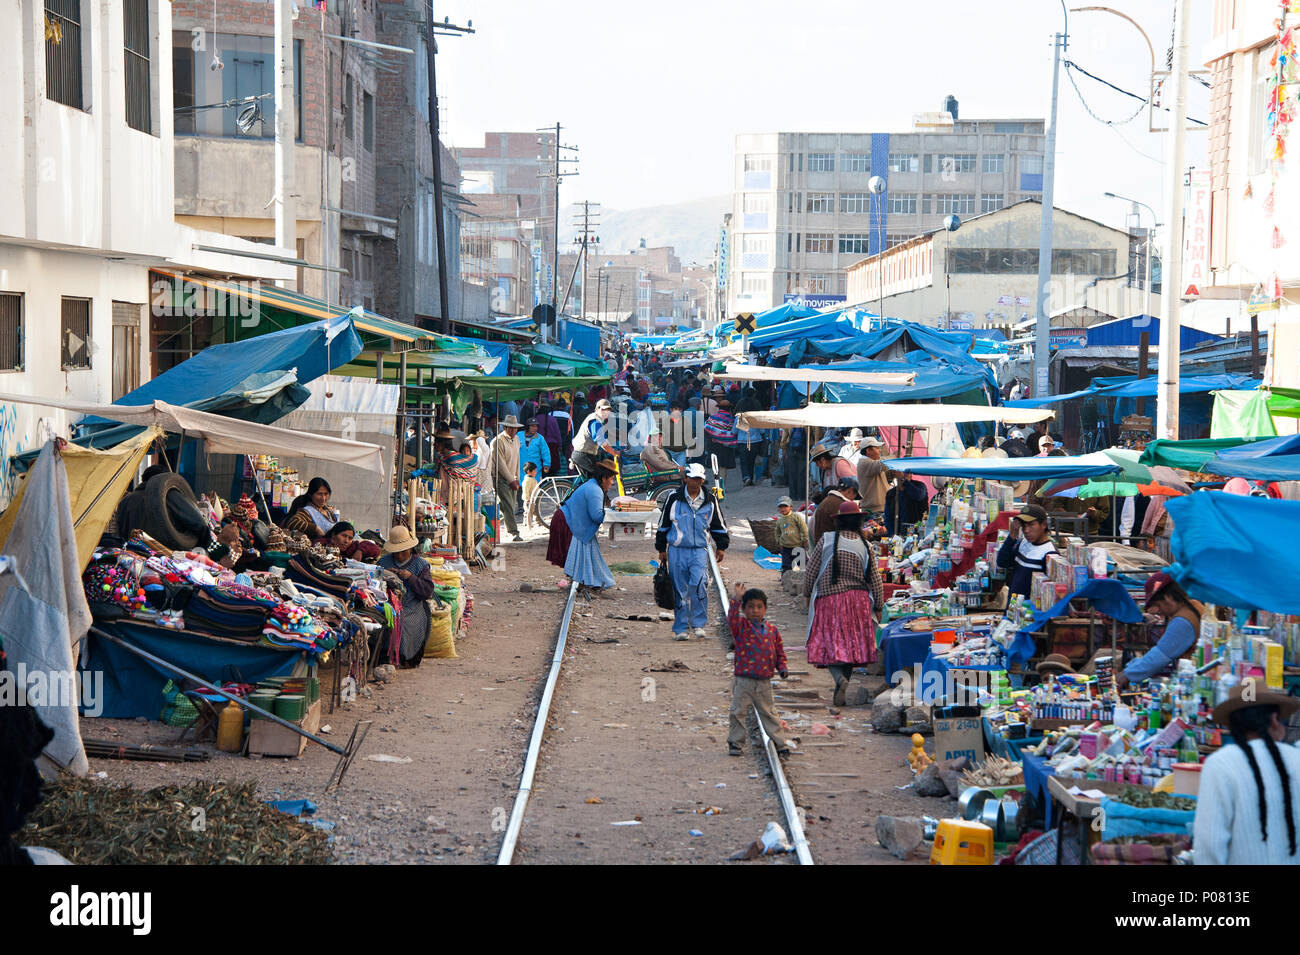 La fotografía de la calle mostrando el camino a través del mercado de la ciudad de Juliaca, en el camino a Puno y el Lago Titicaca por Peru Rail Foto de stock